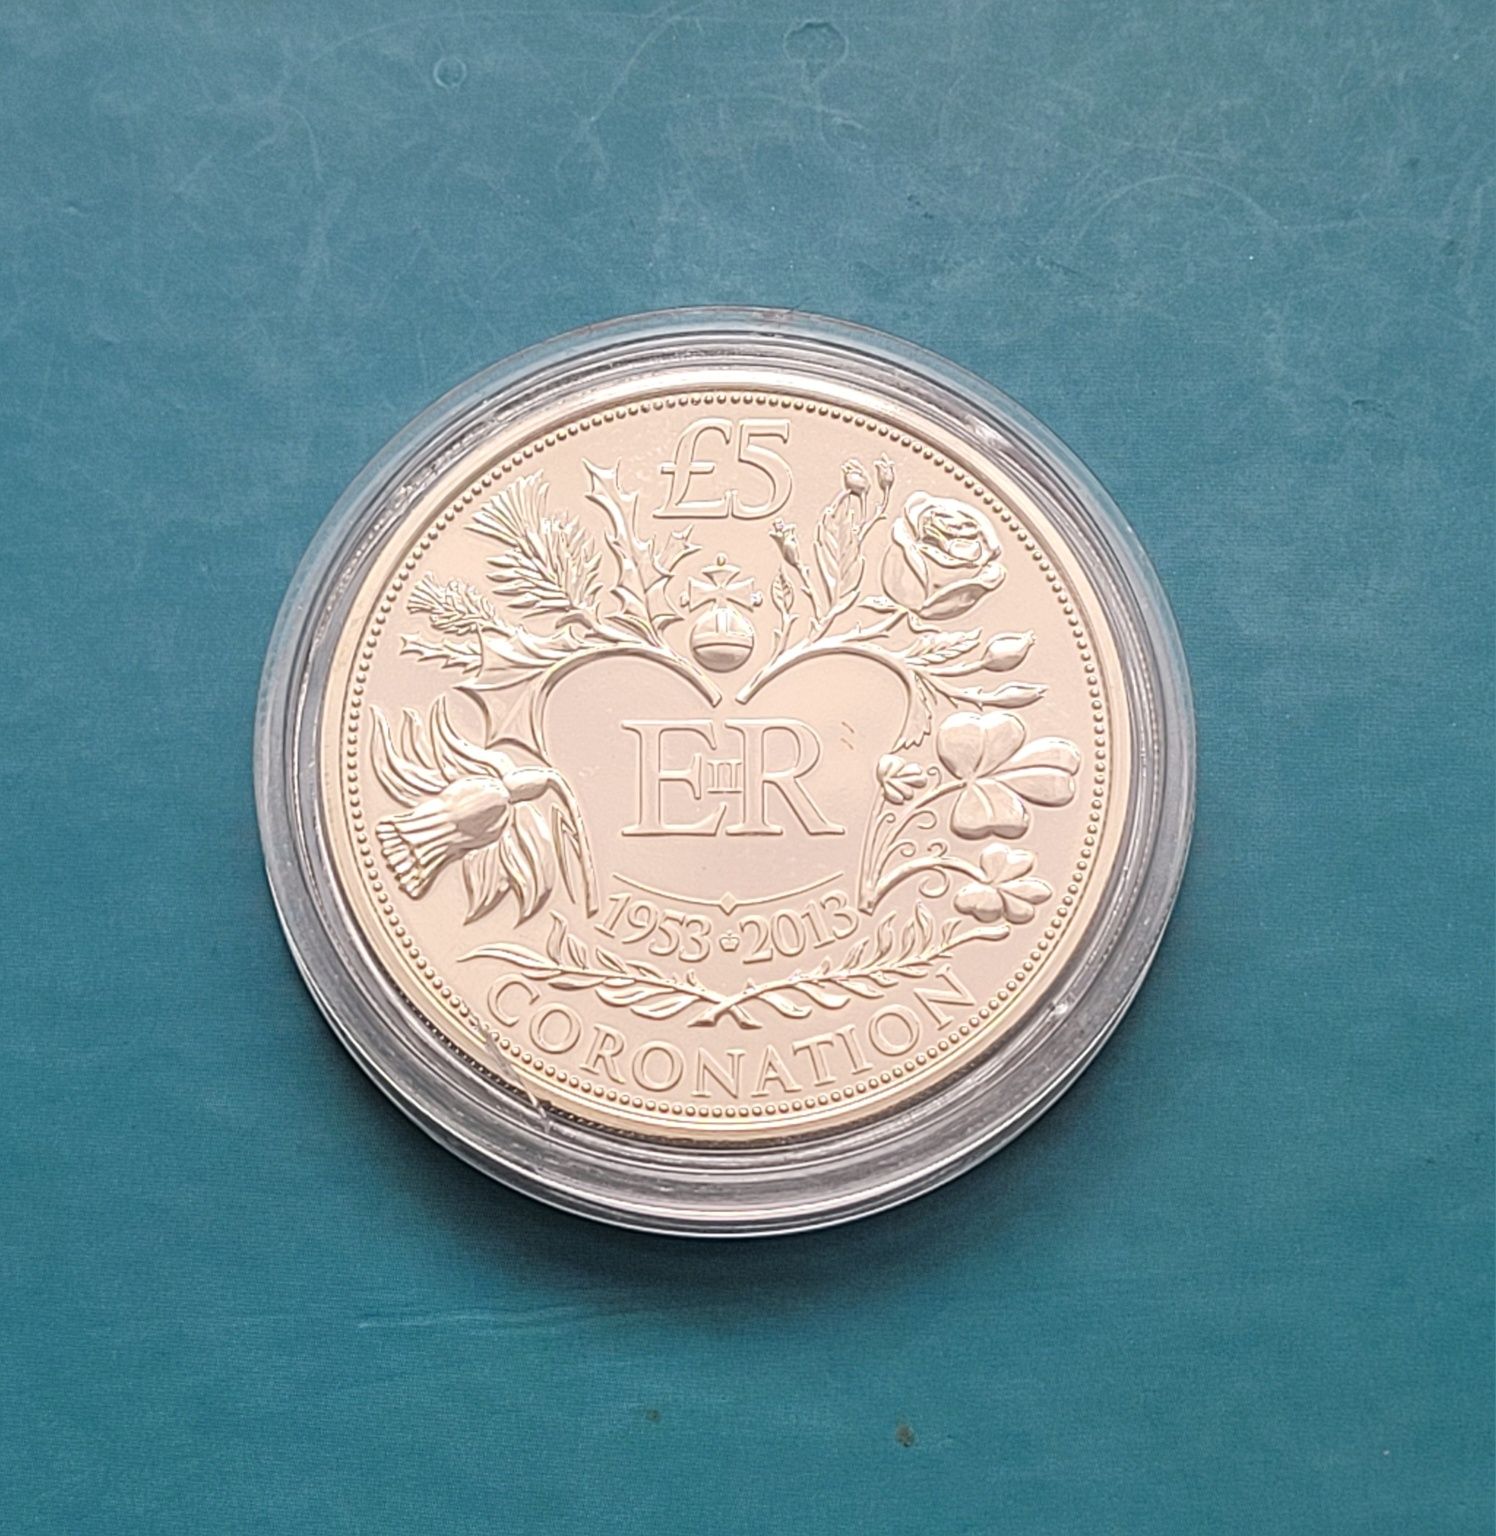 Moneta 5 funtów 2013 - 60ta rocznica koronacji królowej Elizabeth II